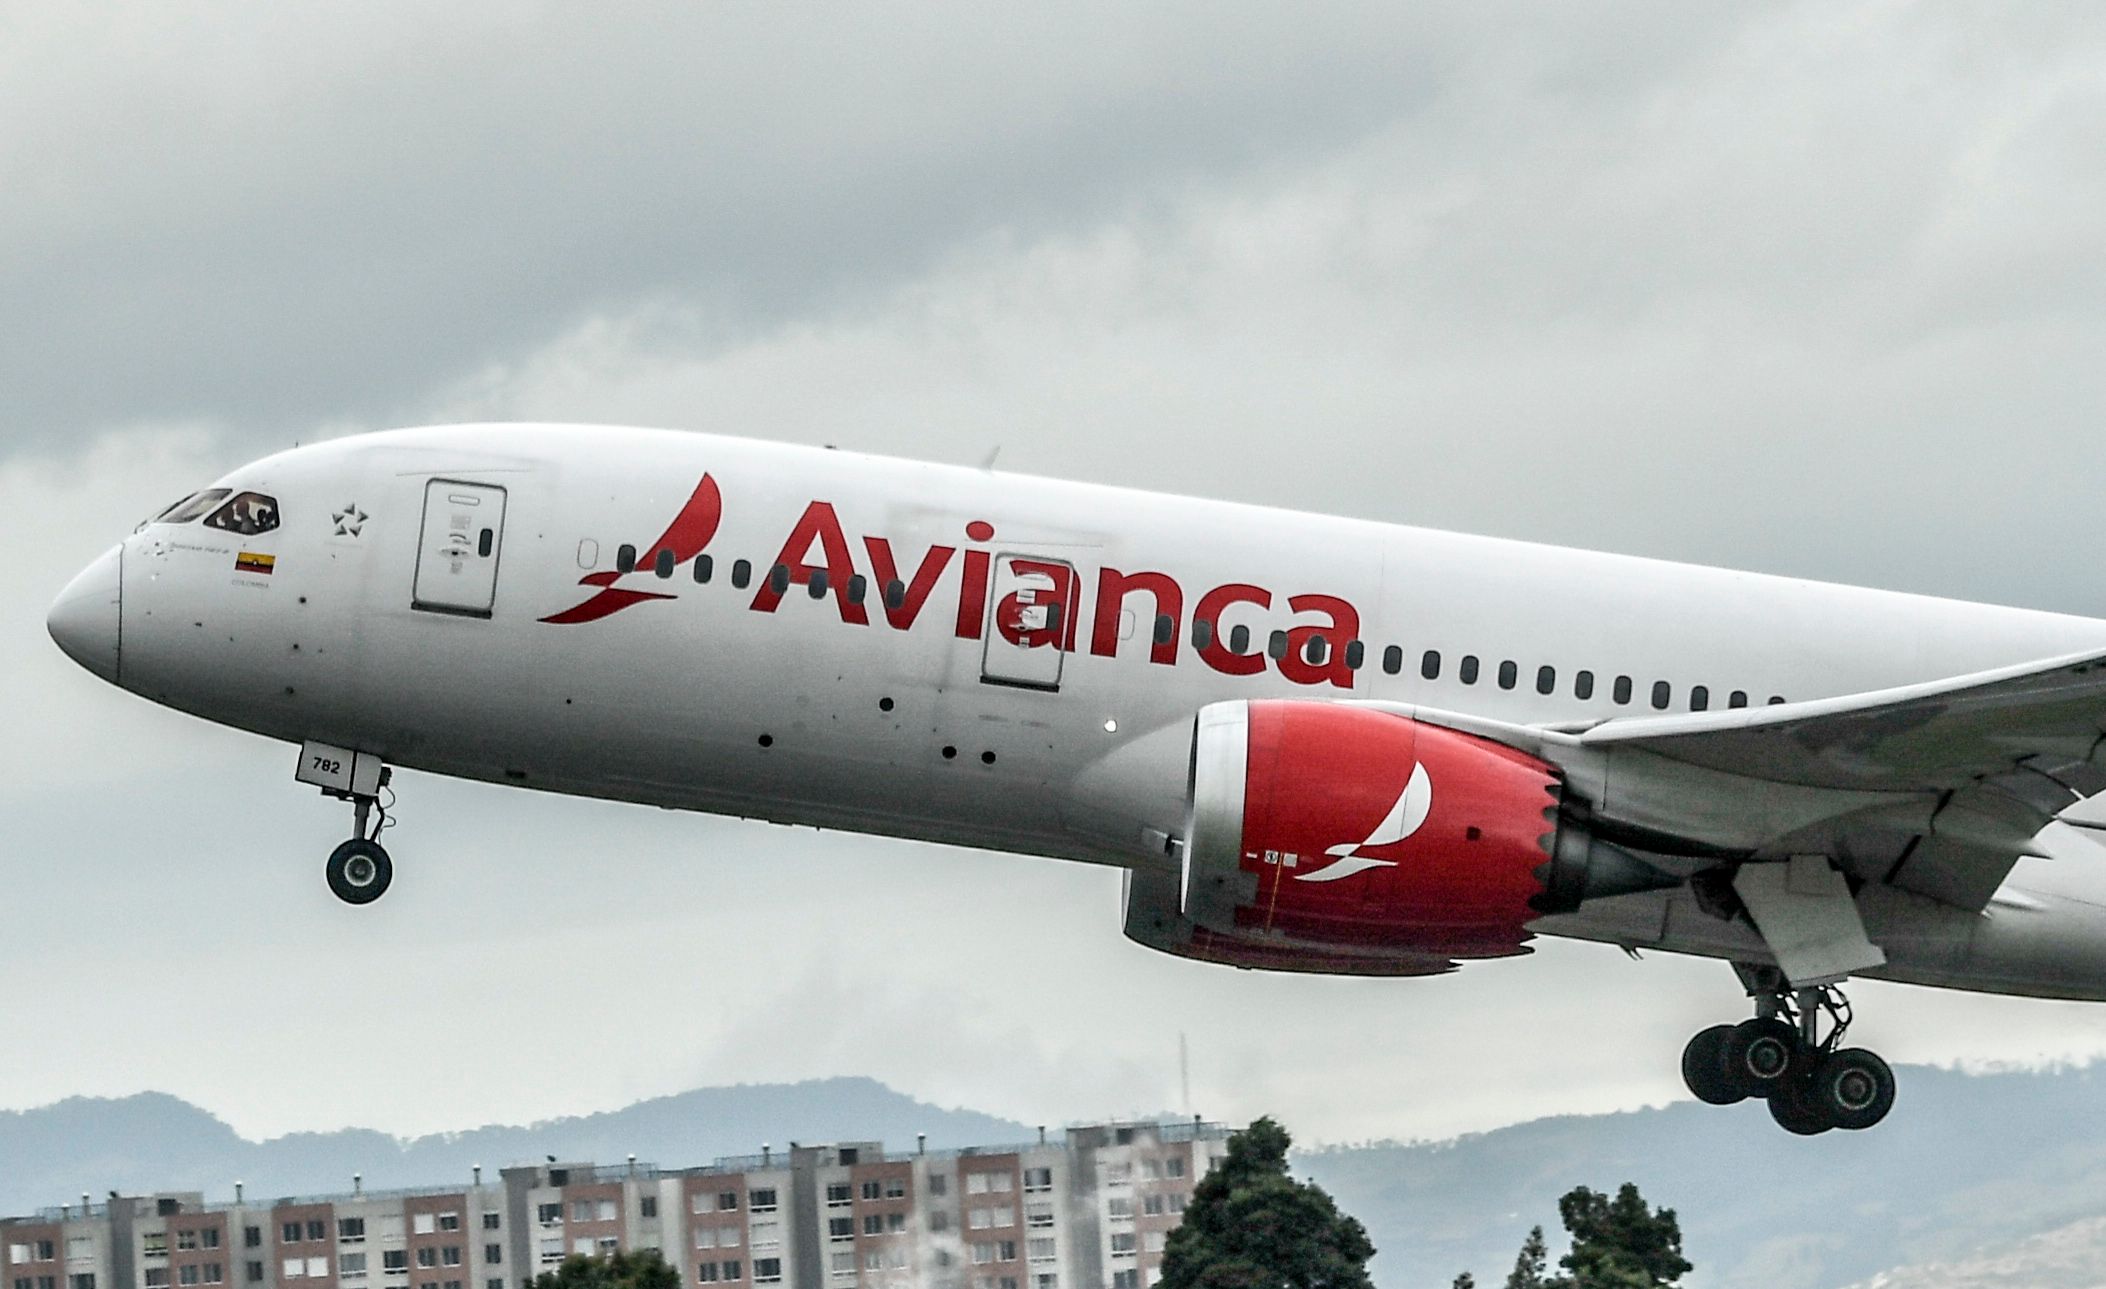 An Avianca aircraft departing.